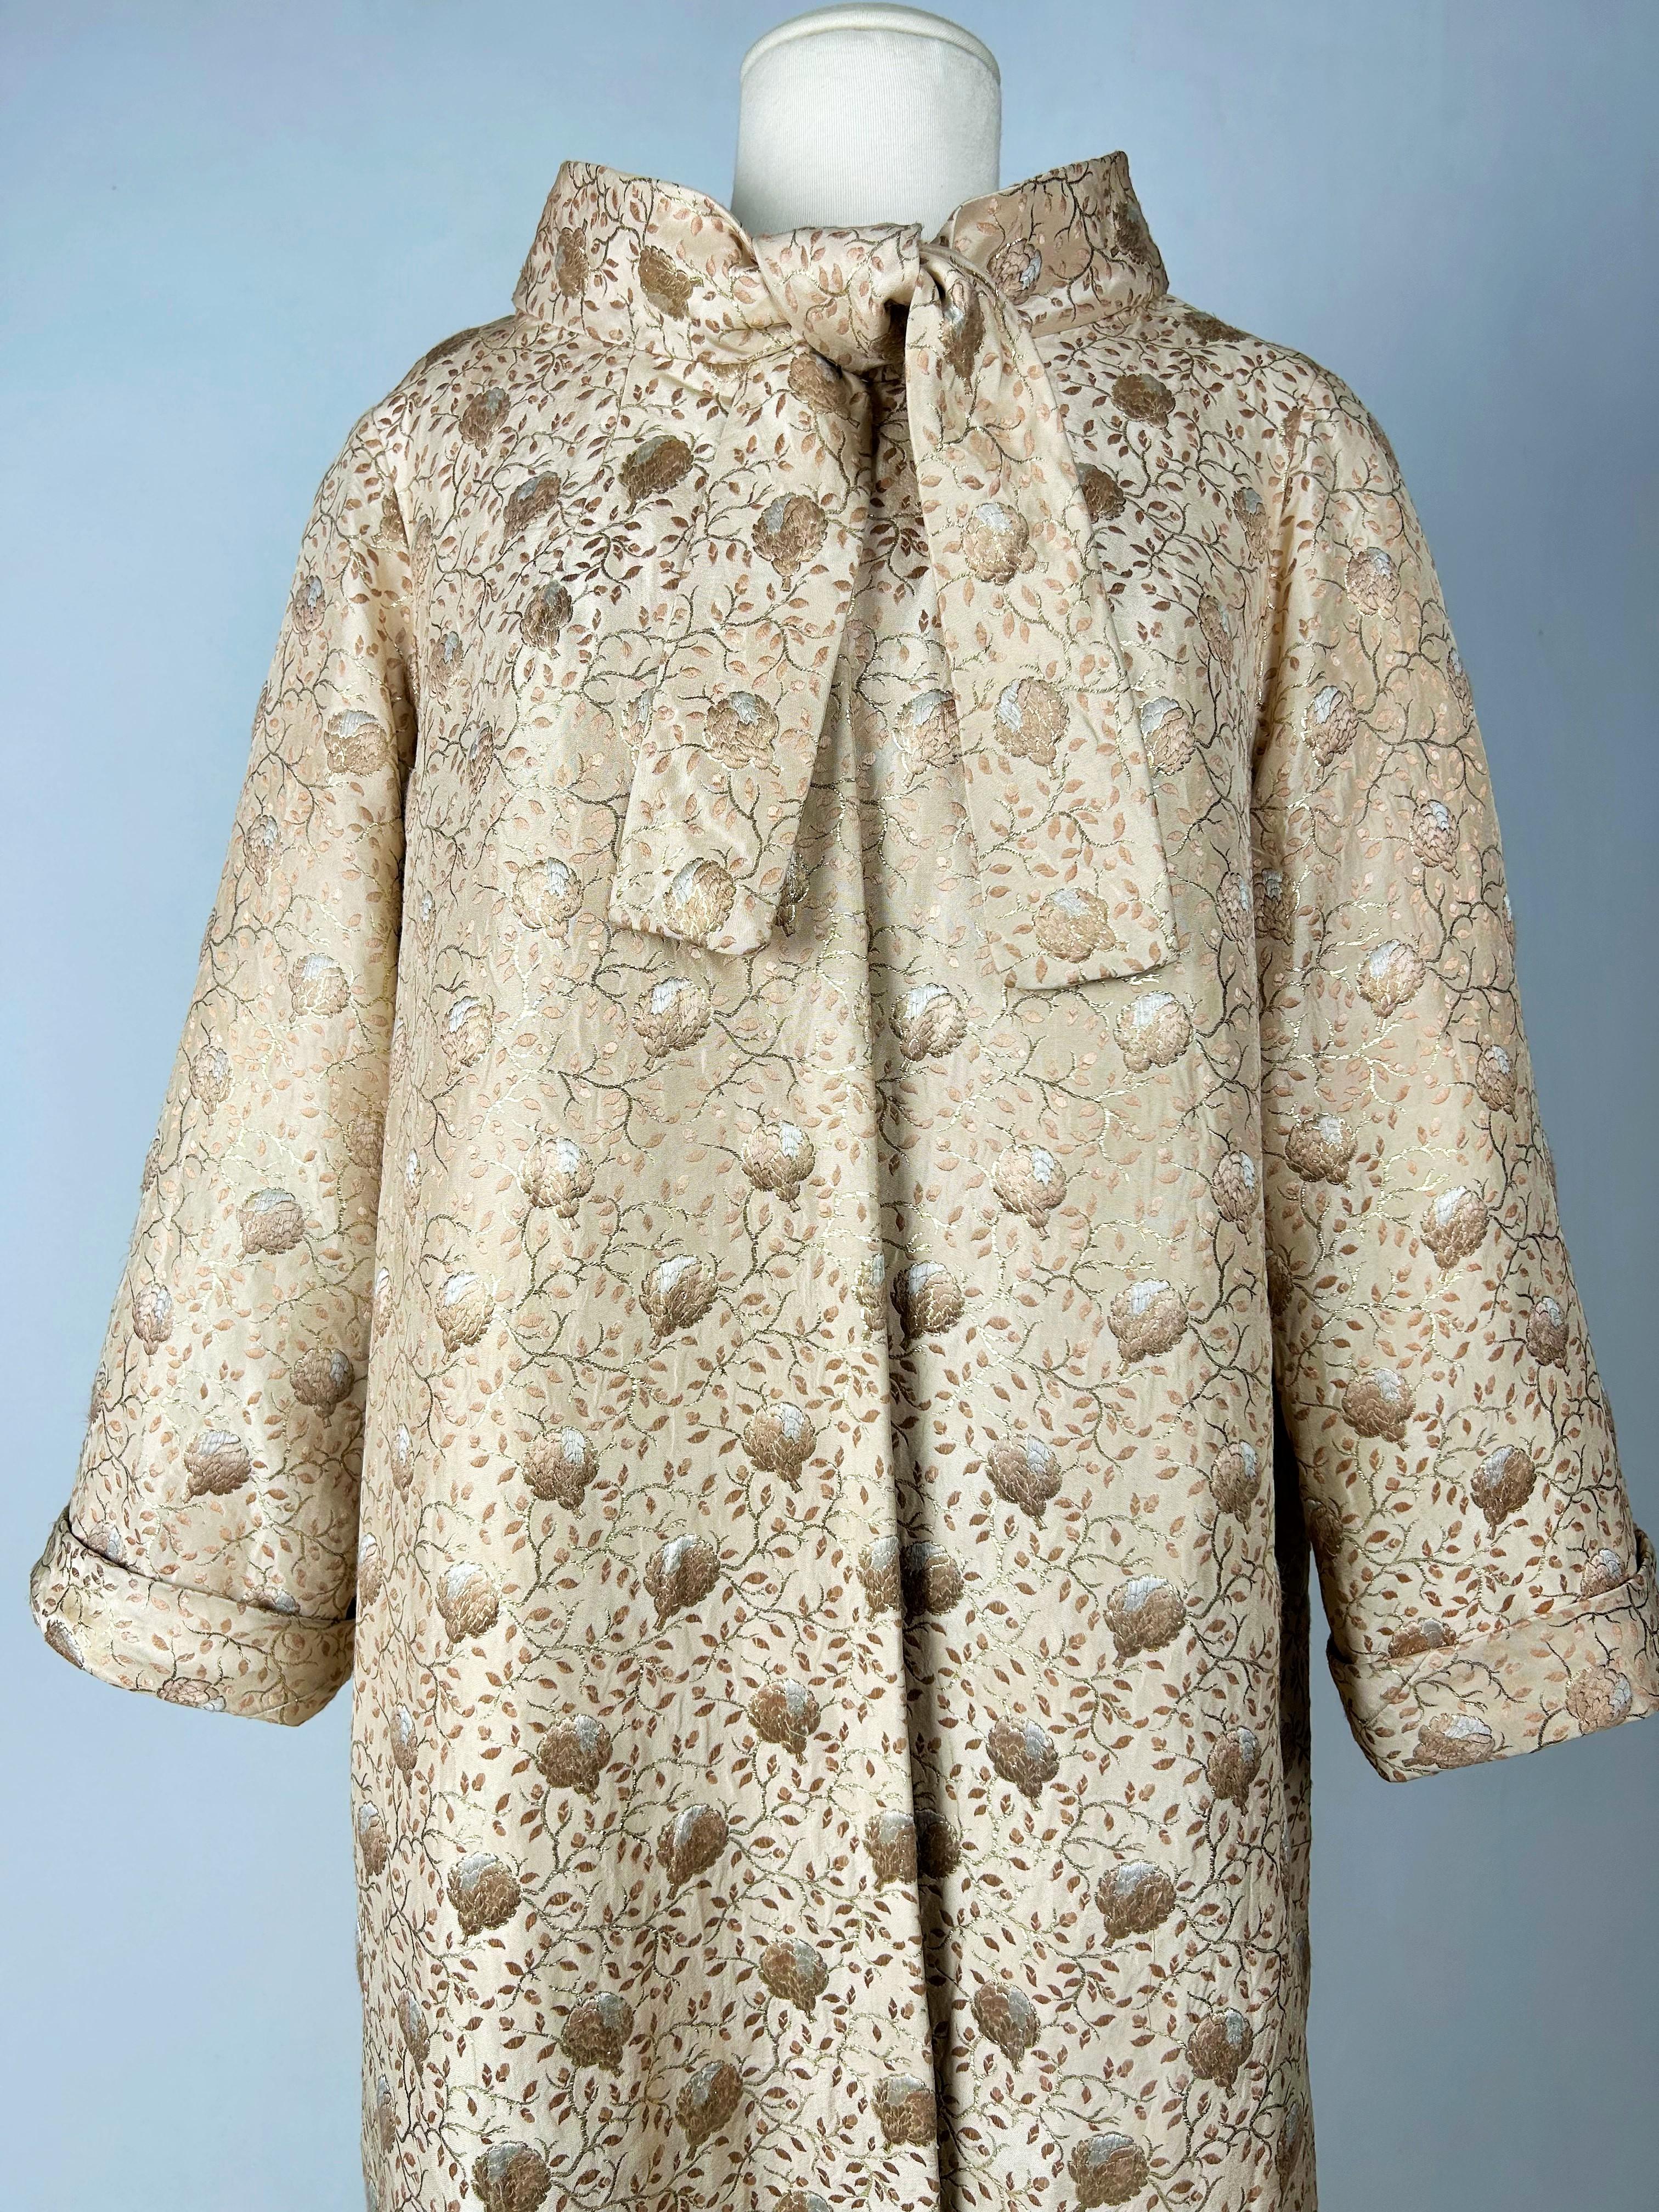 Gold lamé Brocade Evening Coat by Jean Dessès Haute Couture Circa 1955-1960 For Sale 5